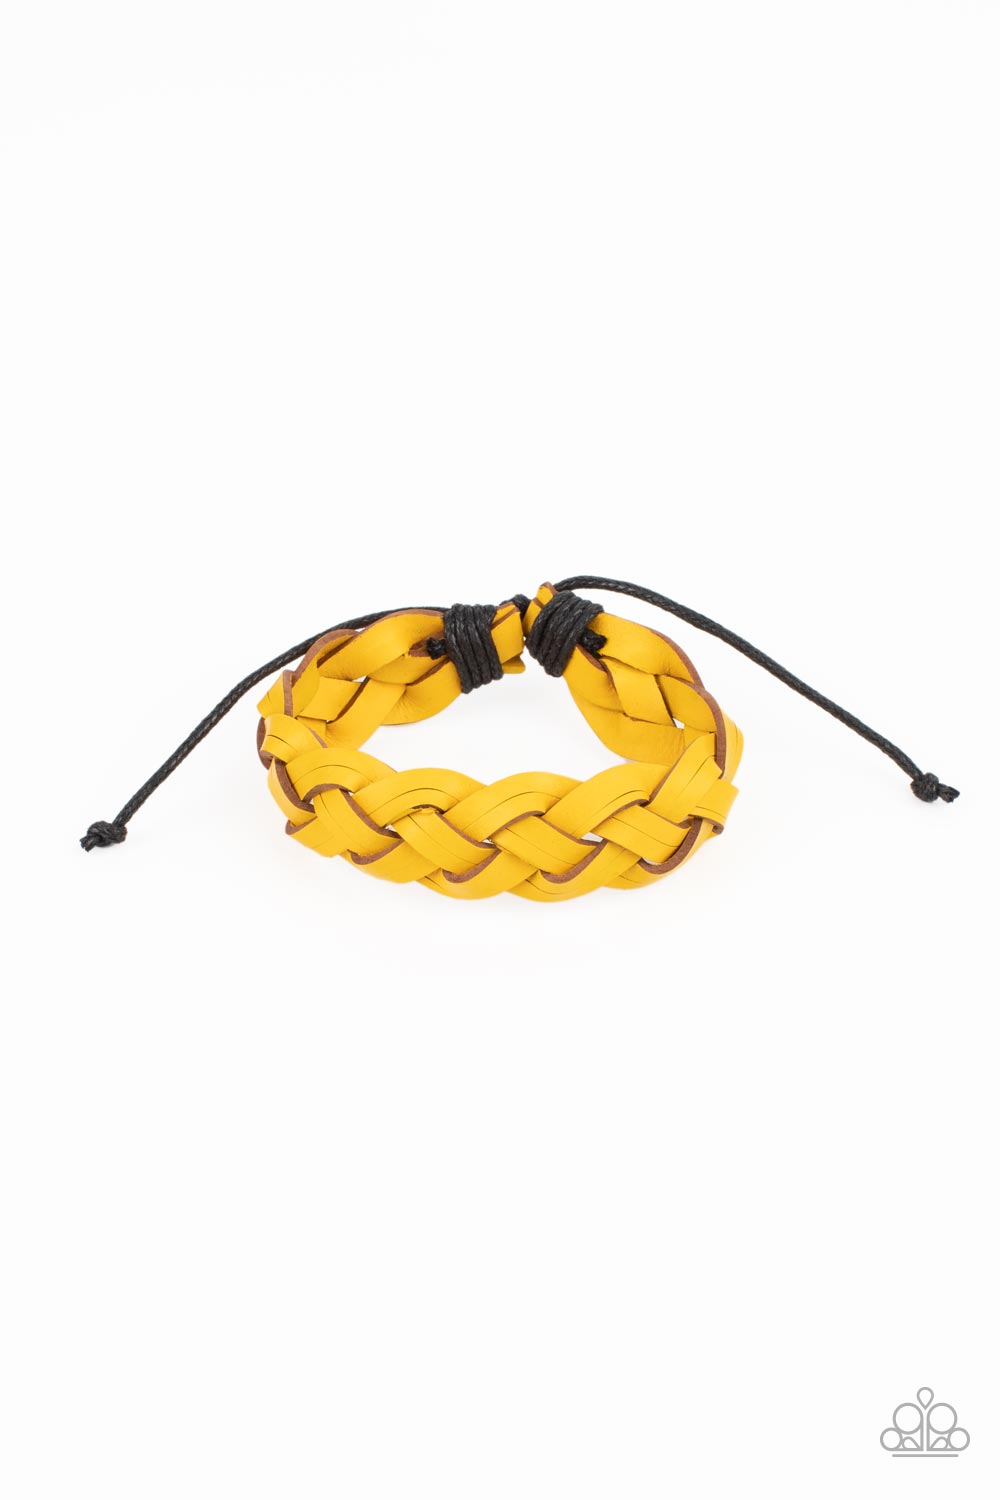 SoCal Summer - Yellow bracelet A058